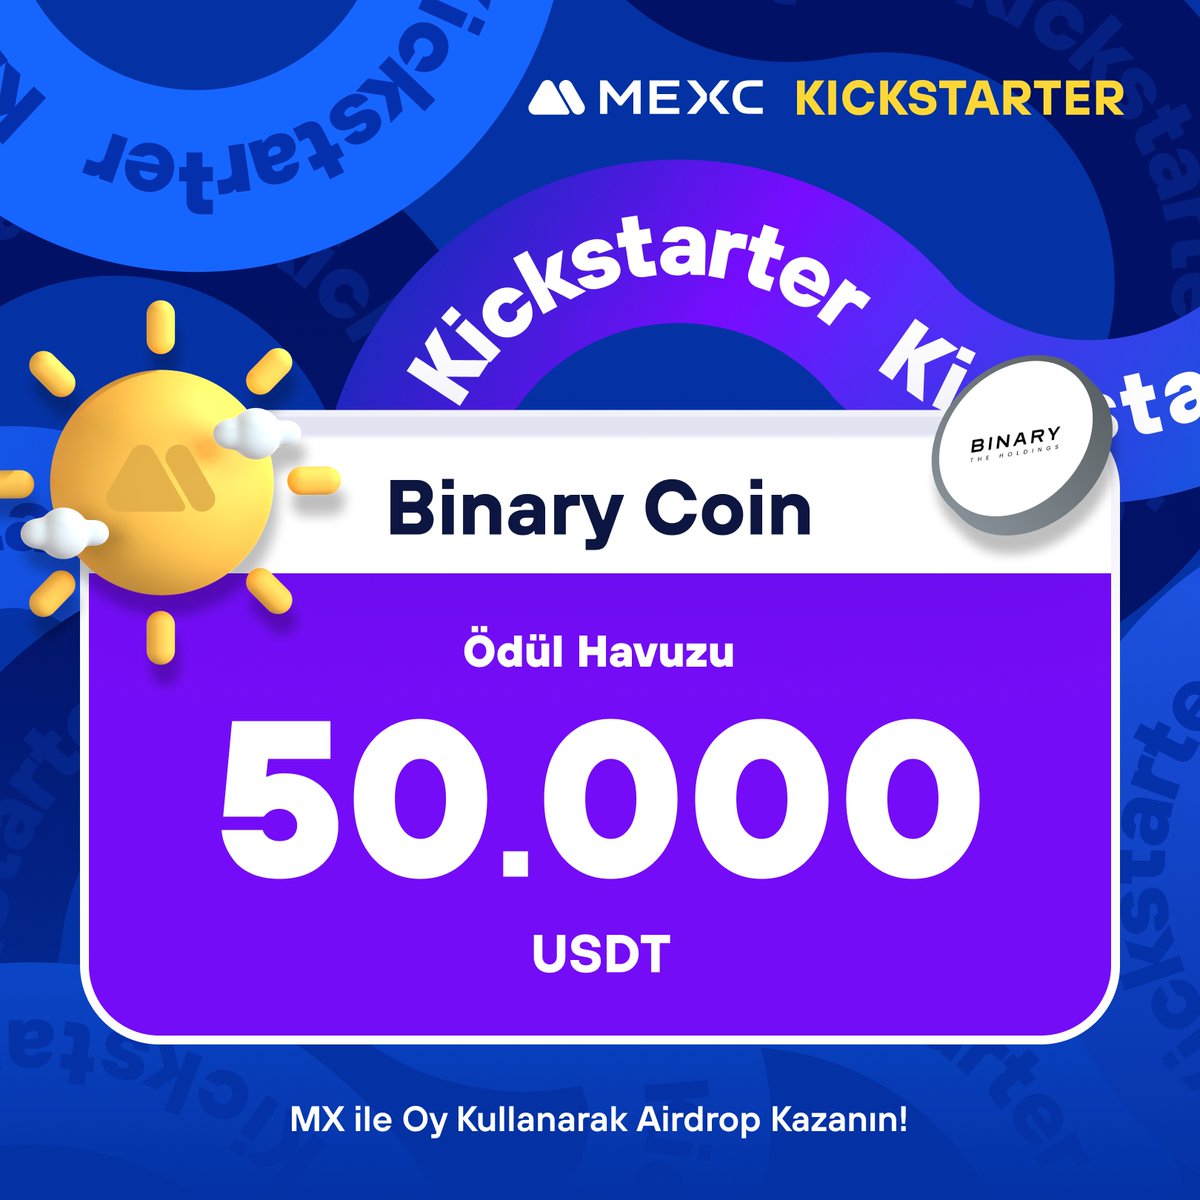 🚀 #MEXCKickstarter - @thebinaryhldgs $BNRY Projesi için Oy Kullanın, 50.000 $USDT Airdrop Kazanın!

🗳️ Oylama Tarihi: 29 Nisan 2024 07.00 - 30 Nisan 2024 06.50

📌 Ayrıntılar: mexctr.info/3JFoXgm

#MEXCTürkiye #MXToken #MX #BTC